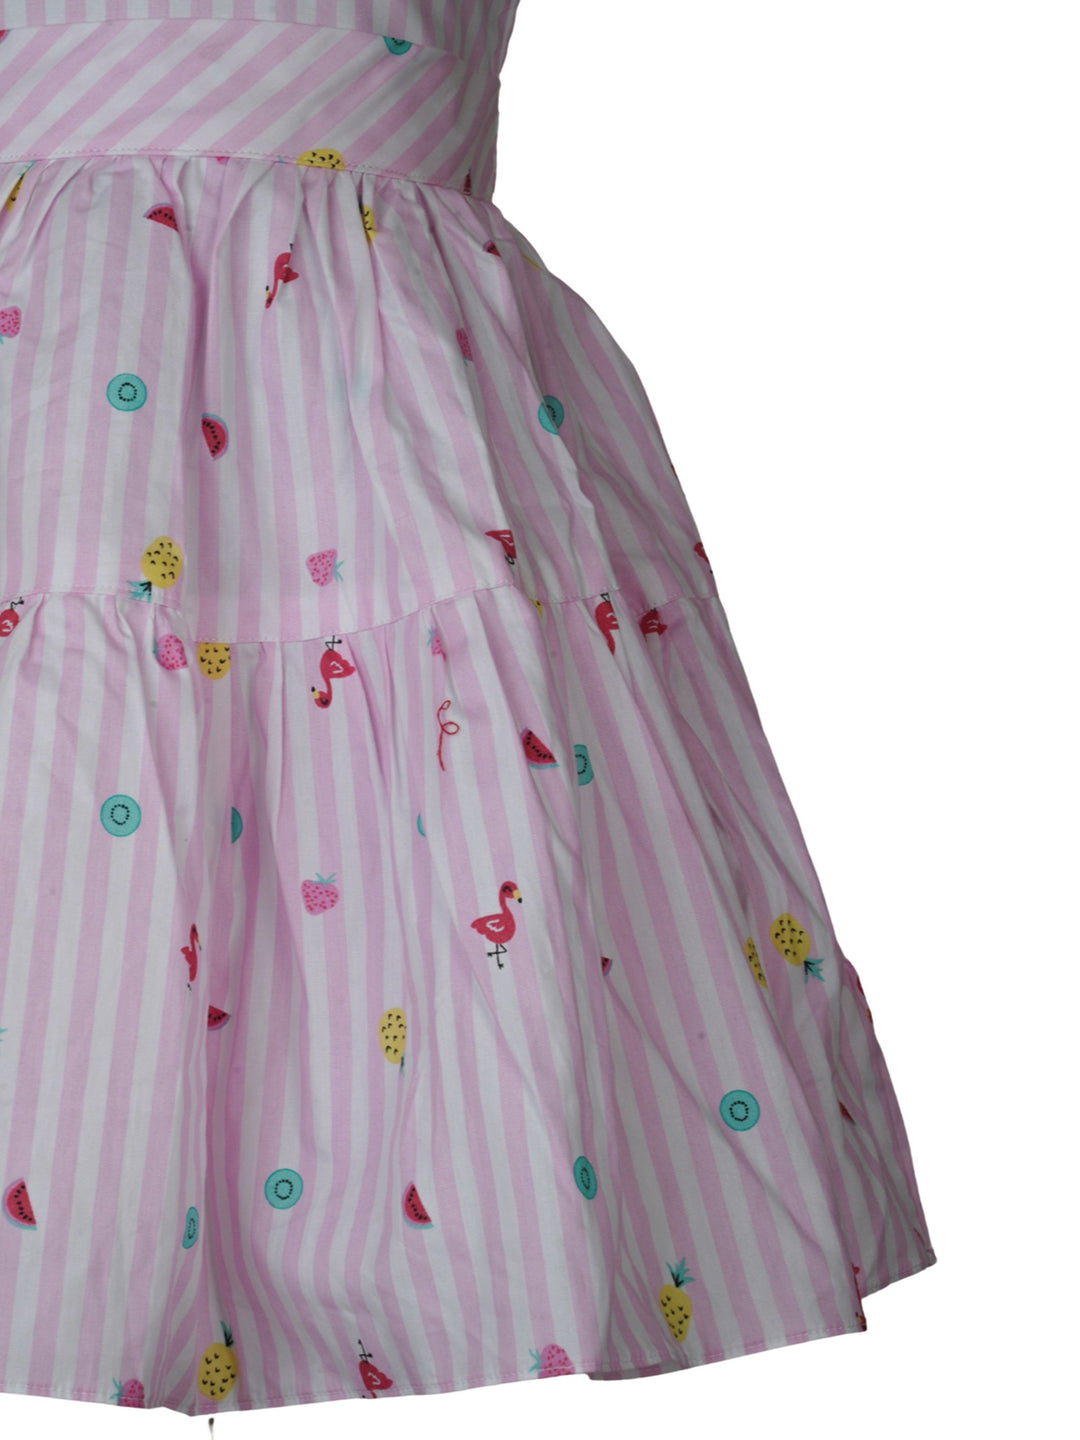 The Nesavu Frocks & Dresses Baby Pink stripes on White Frock with Fruity Prints psr silks Nesavu